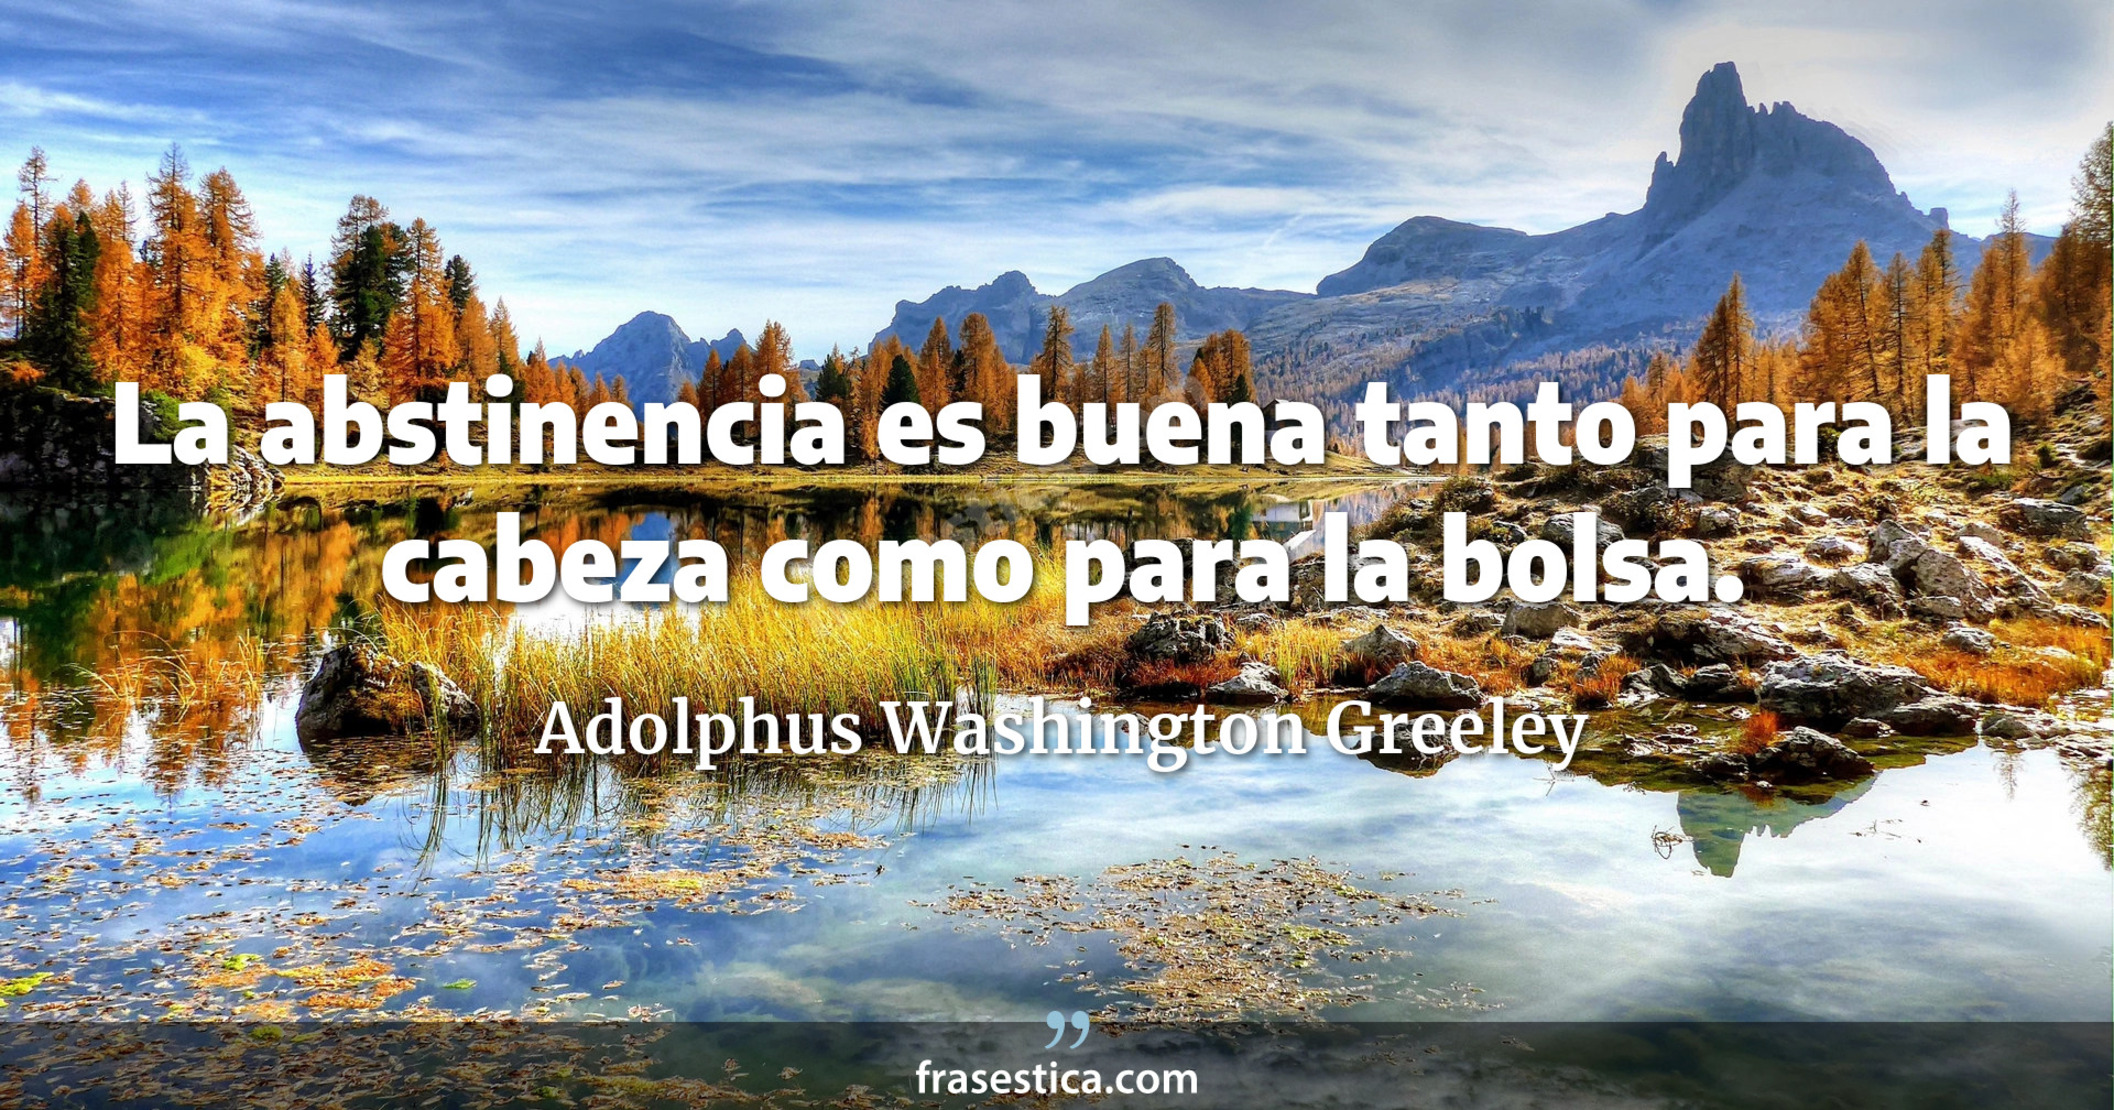 La abstinencia es buena tanto para la cabeza como para la bolsa. - Adolphus Washington Greeley